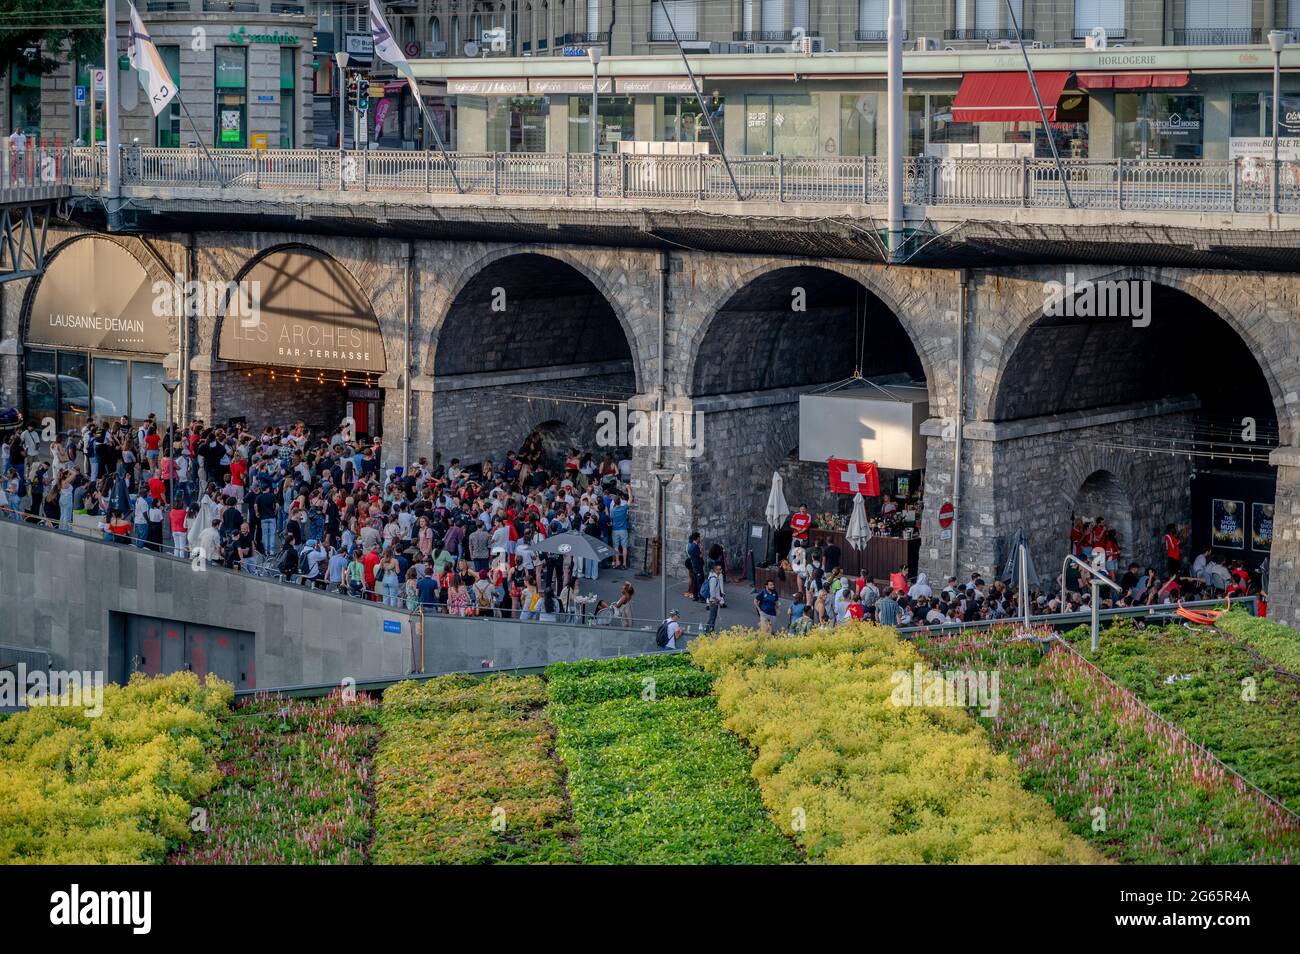 Losanna, Cantone di Vaud, Svizzera - 2 luglio 2021: Folla di persone che guardano la partita di calcio UEFA EURO 2020 Svizzera contro Spagna al bar all'aperto Foto Stock